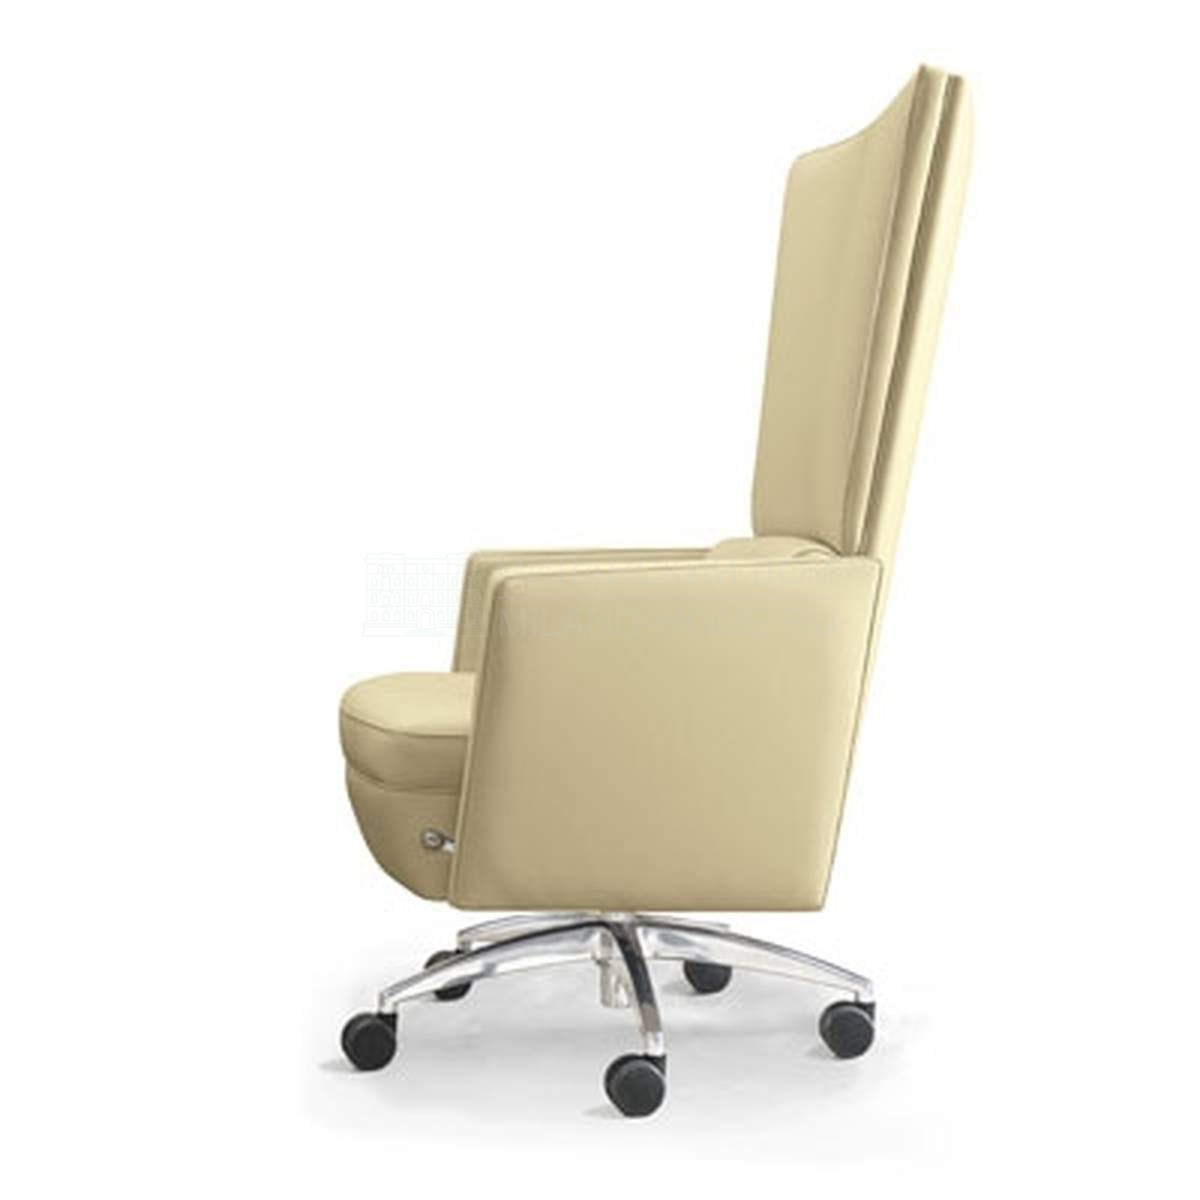 Кожаное кресло Kronos armchair из Италии фабрики MASCHERONI